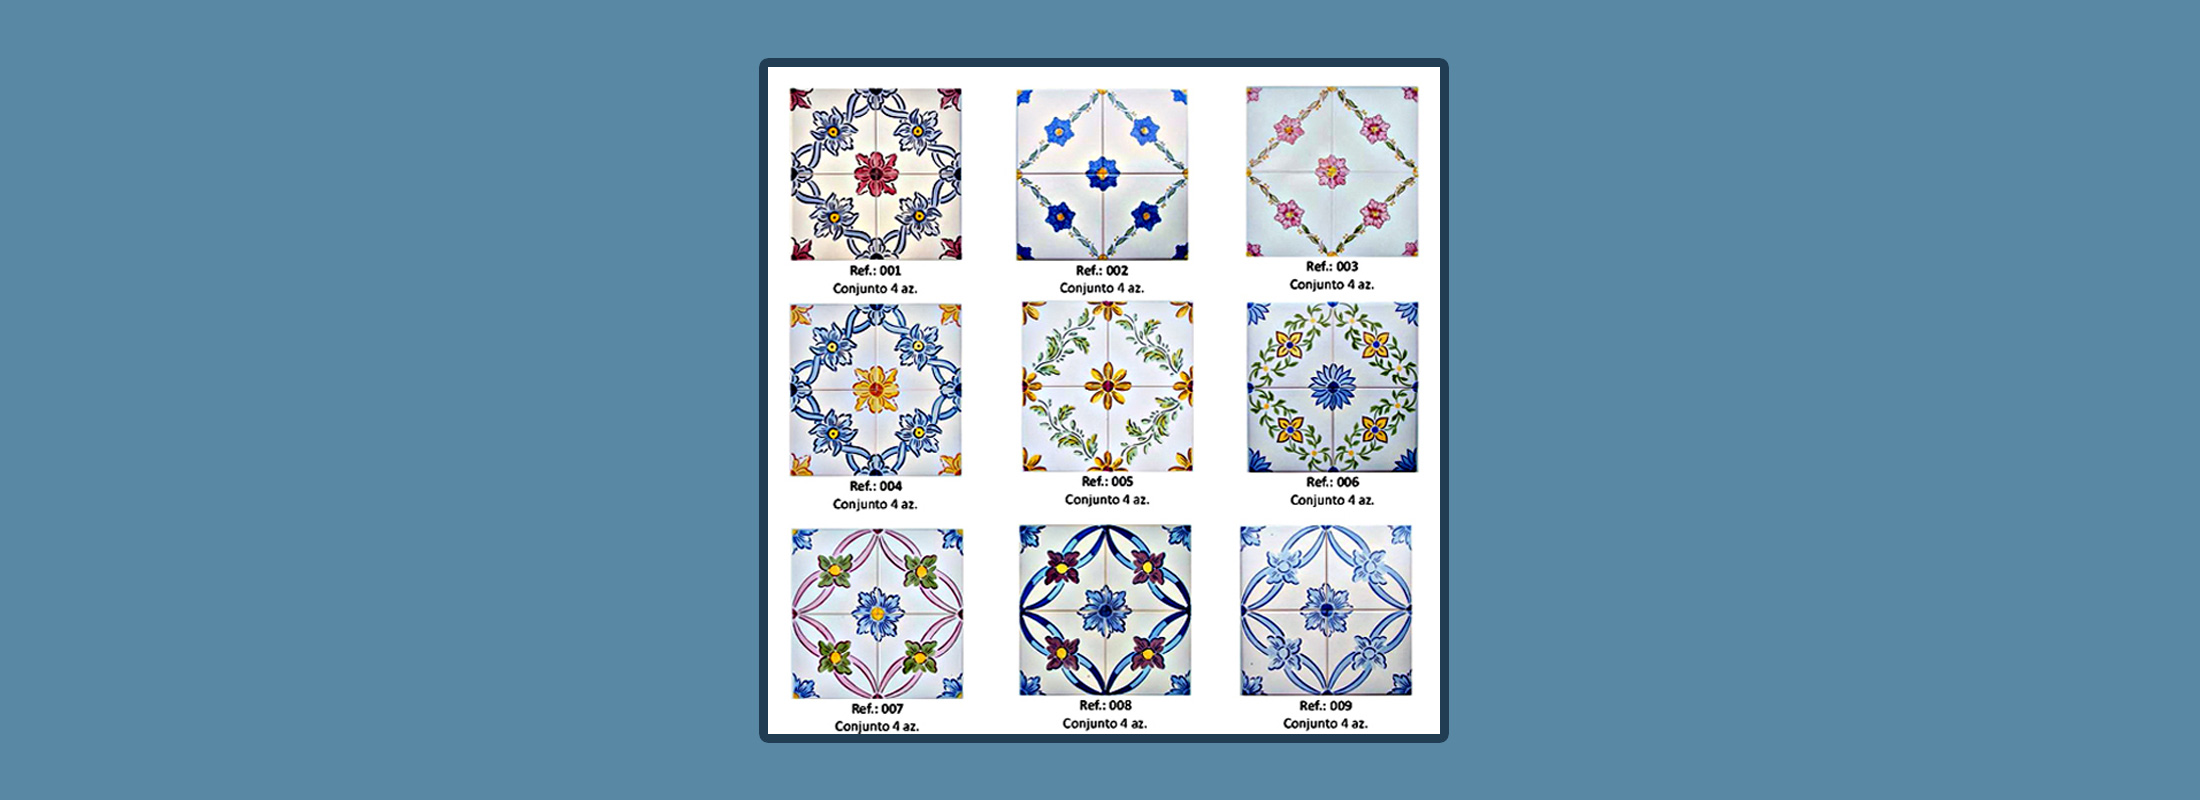 Portuguese Tiles - Azulejos